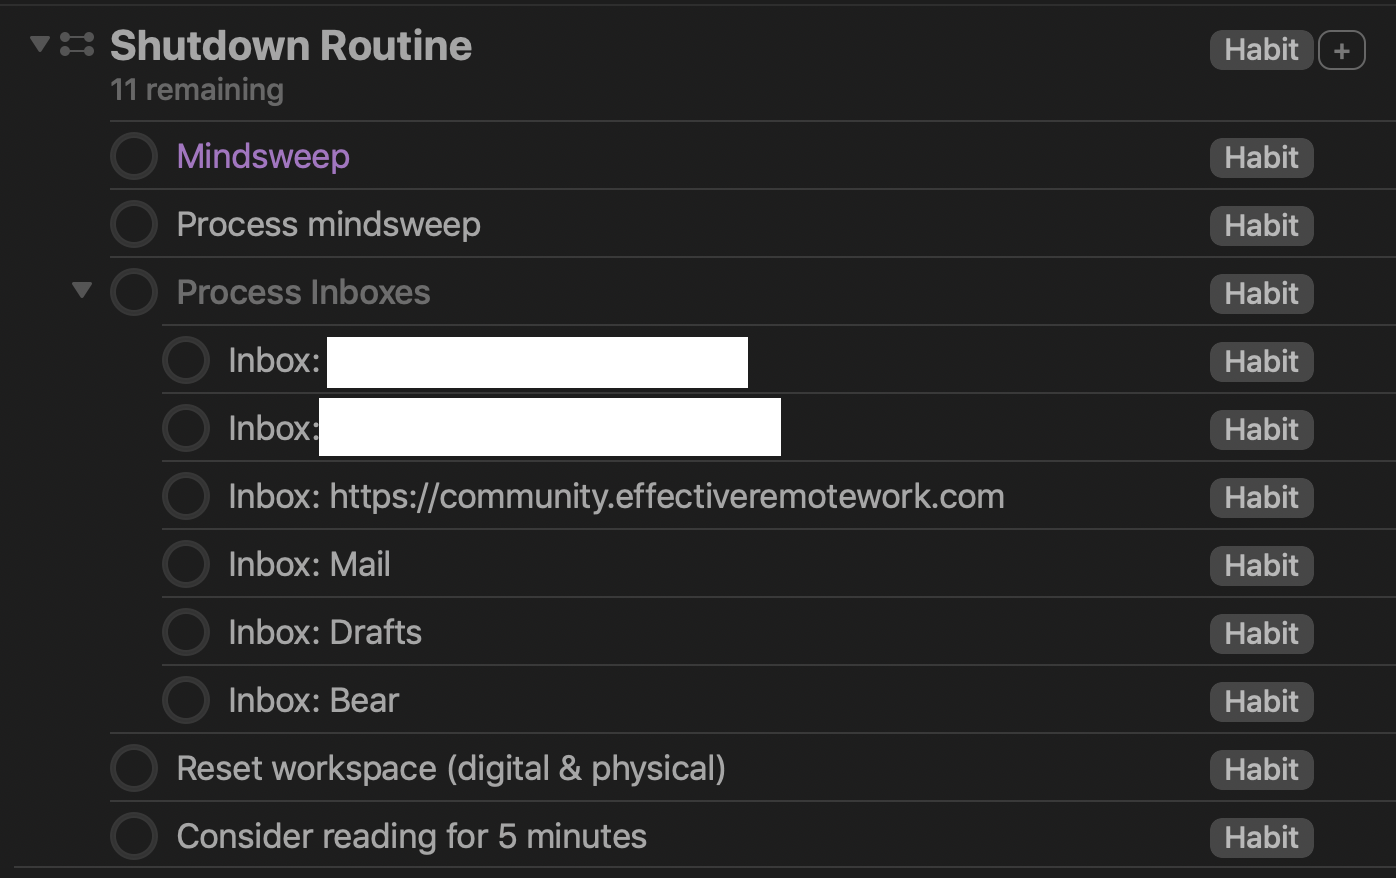 Screenshot showing the Shutdown Routine project.